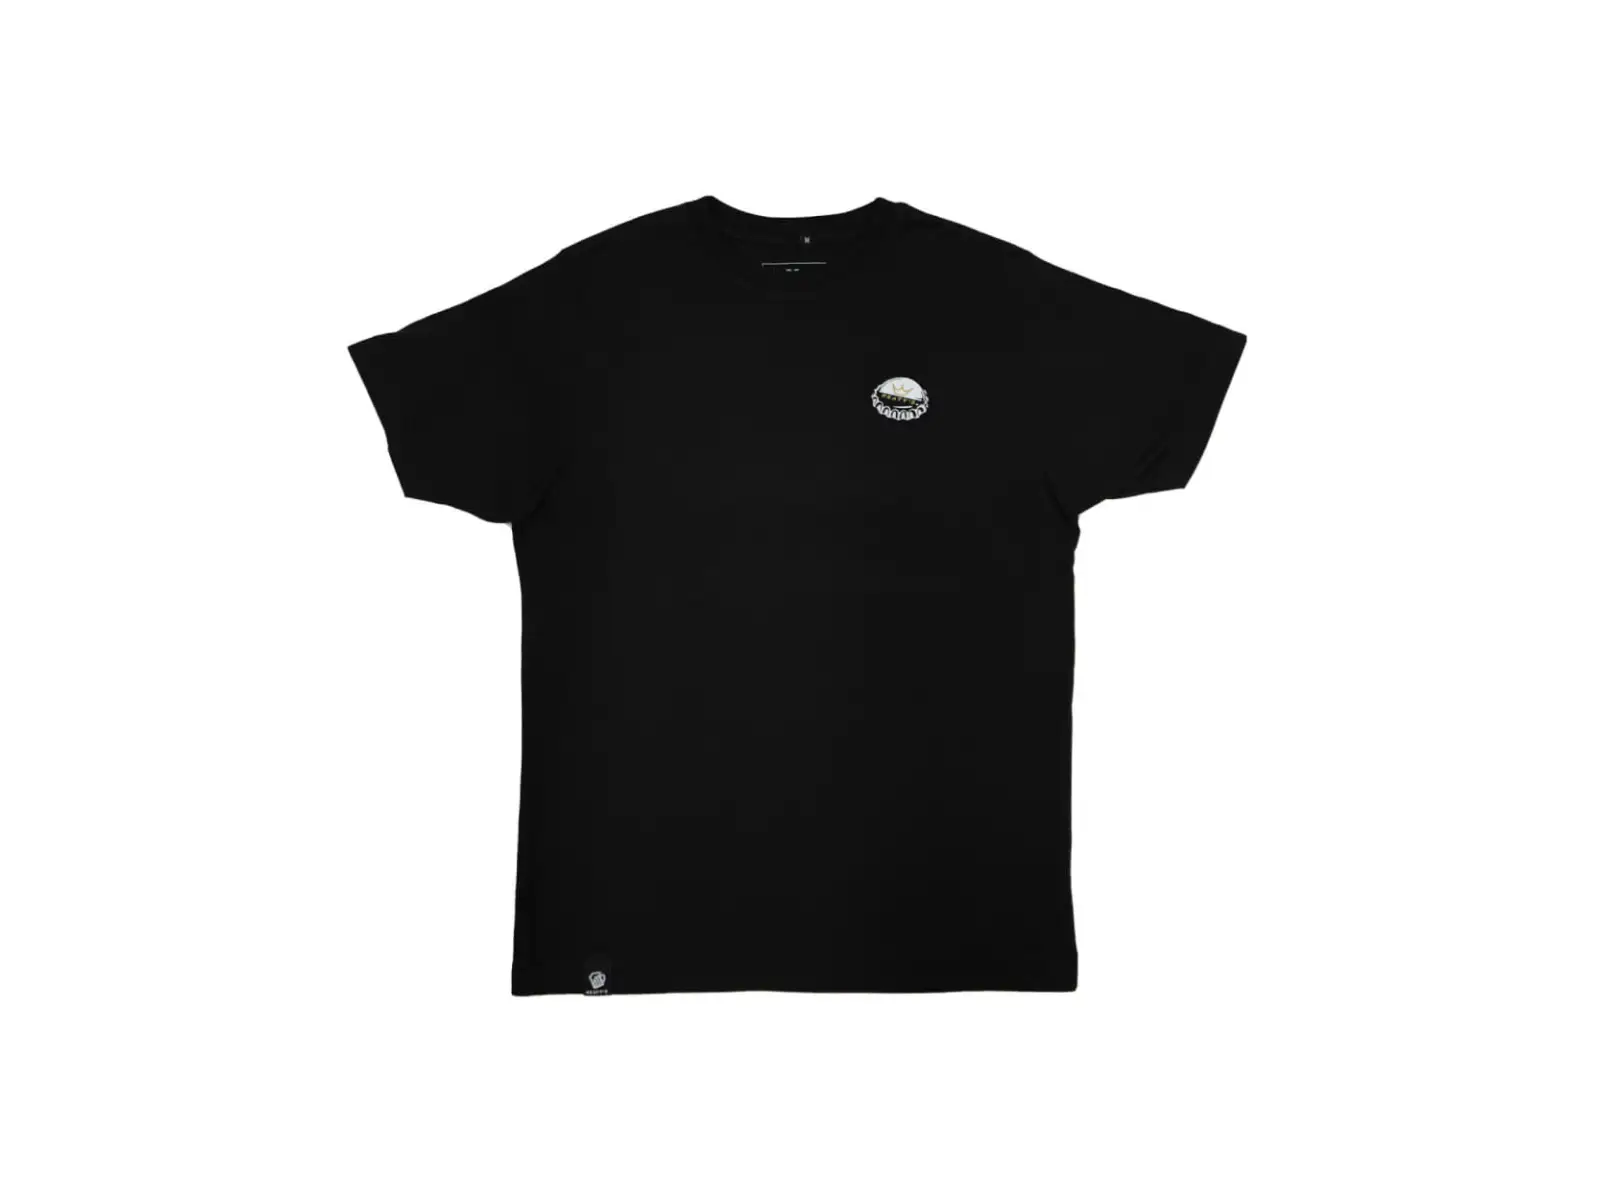 Peatys Pub Wear pánské triko krátký rukáv Homebrew / Black